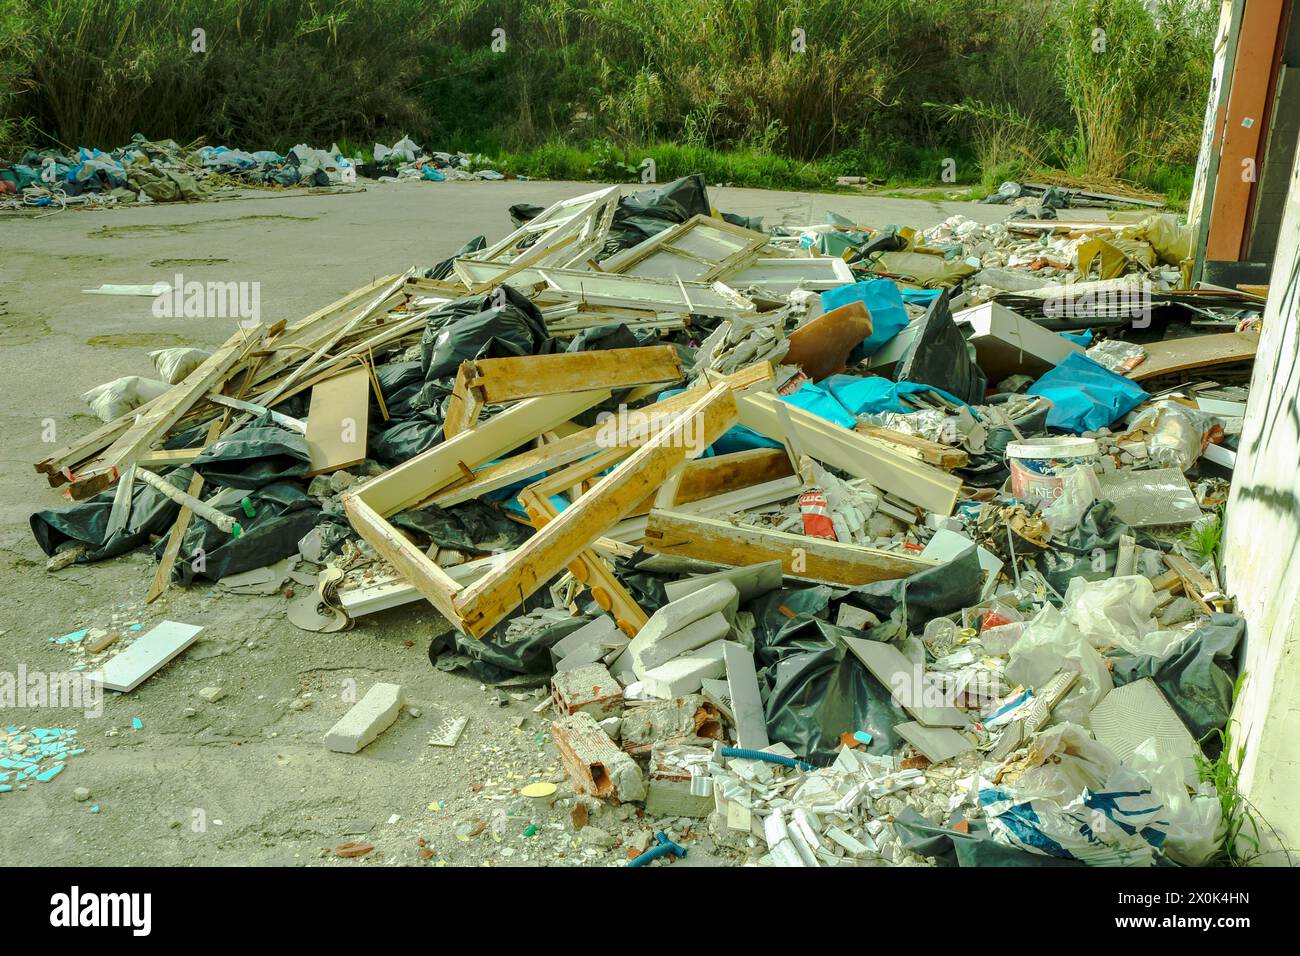 Plongez dans le paysage obsédant de la décomposition urbaine et de la dégradation de l'environnement avec cette image frappante d'une montagne de déchets dans une usine abandonnée Banque D'Images